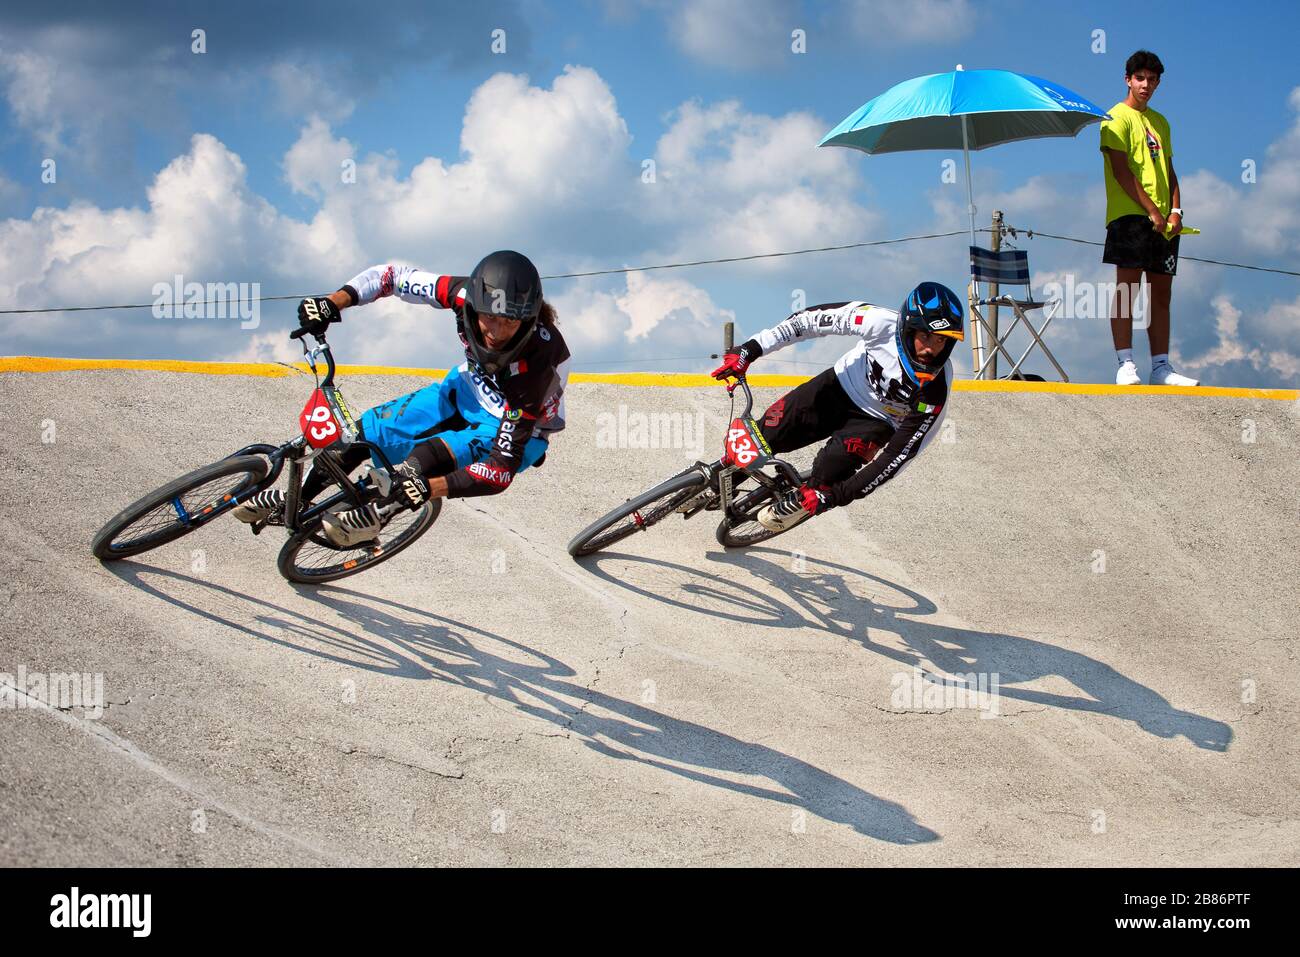 Deux athlètes en action lors d'une course de vélo de croisière. Concept de concurrence. Le dernier sprint. Banque D'Images